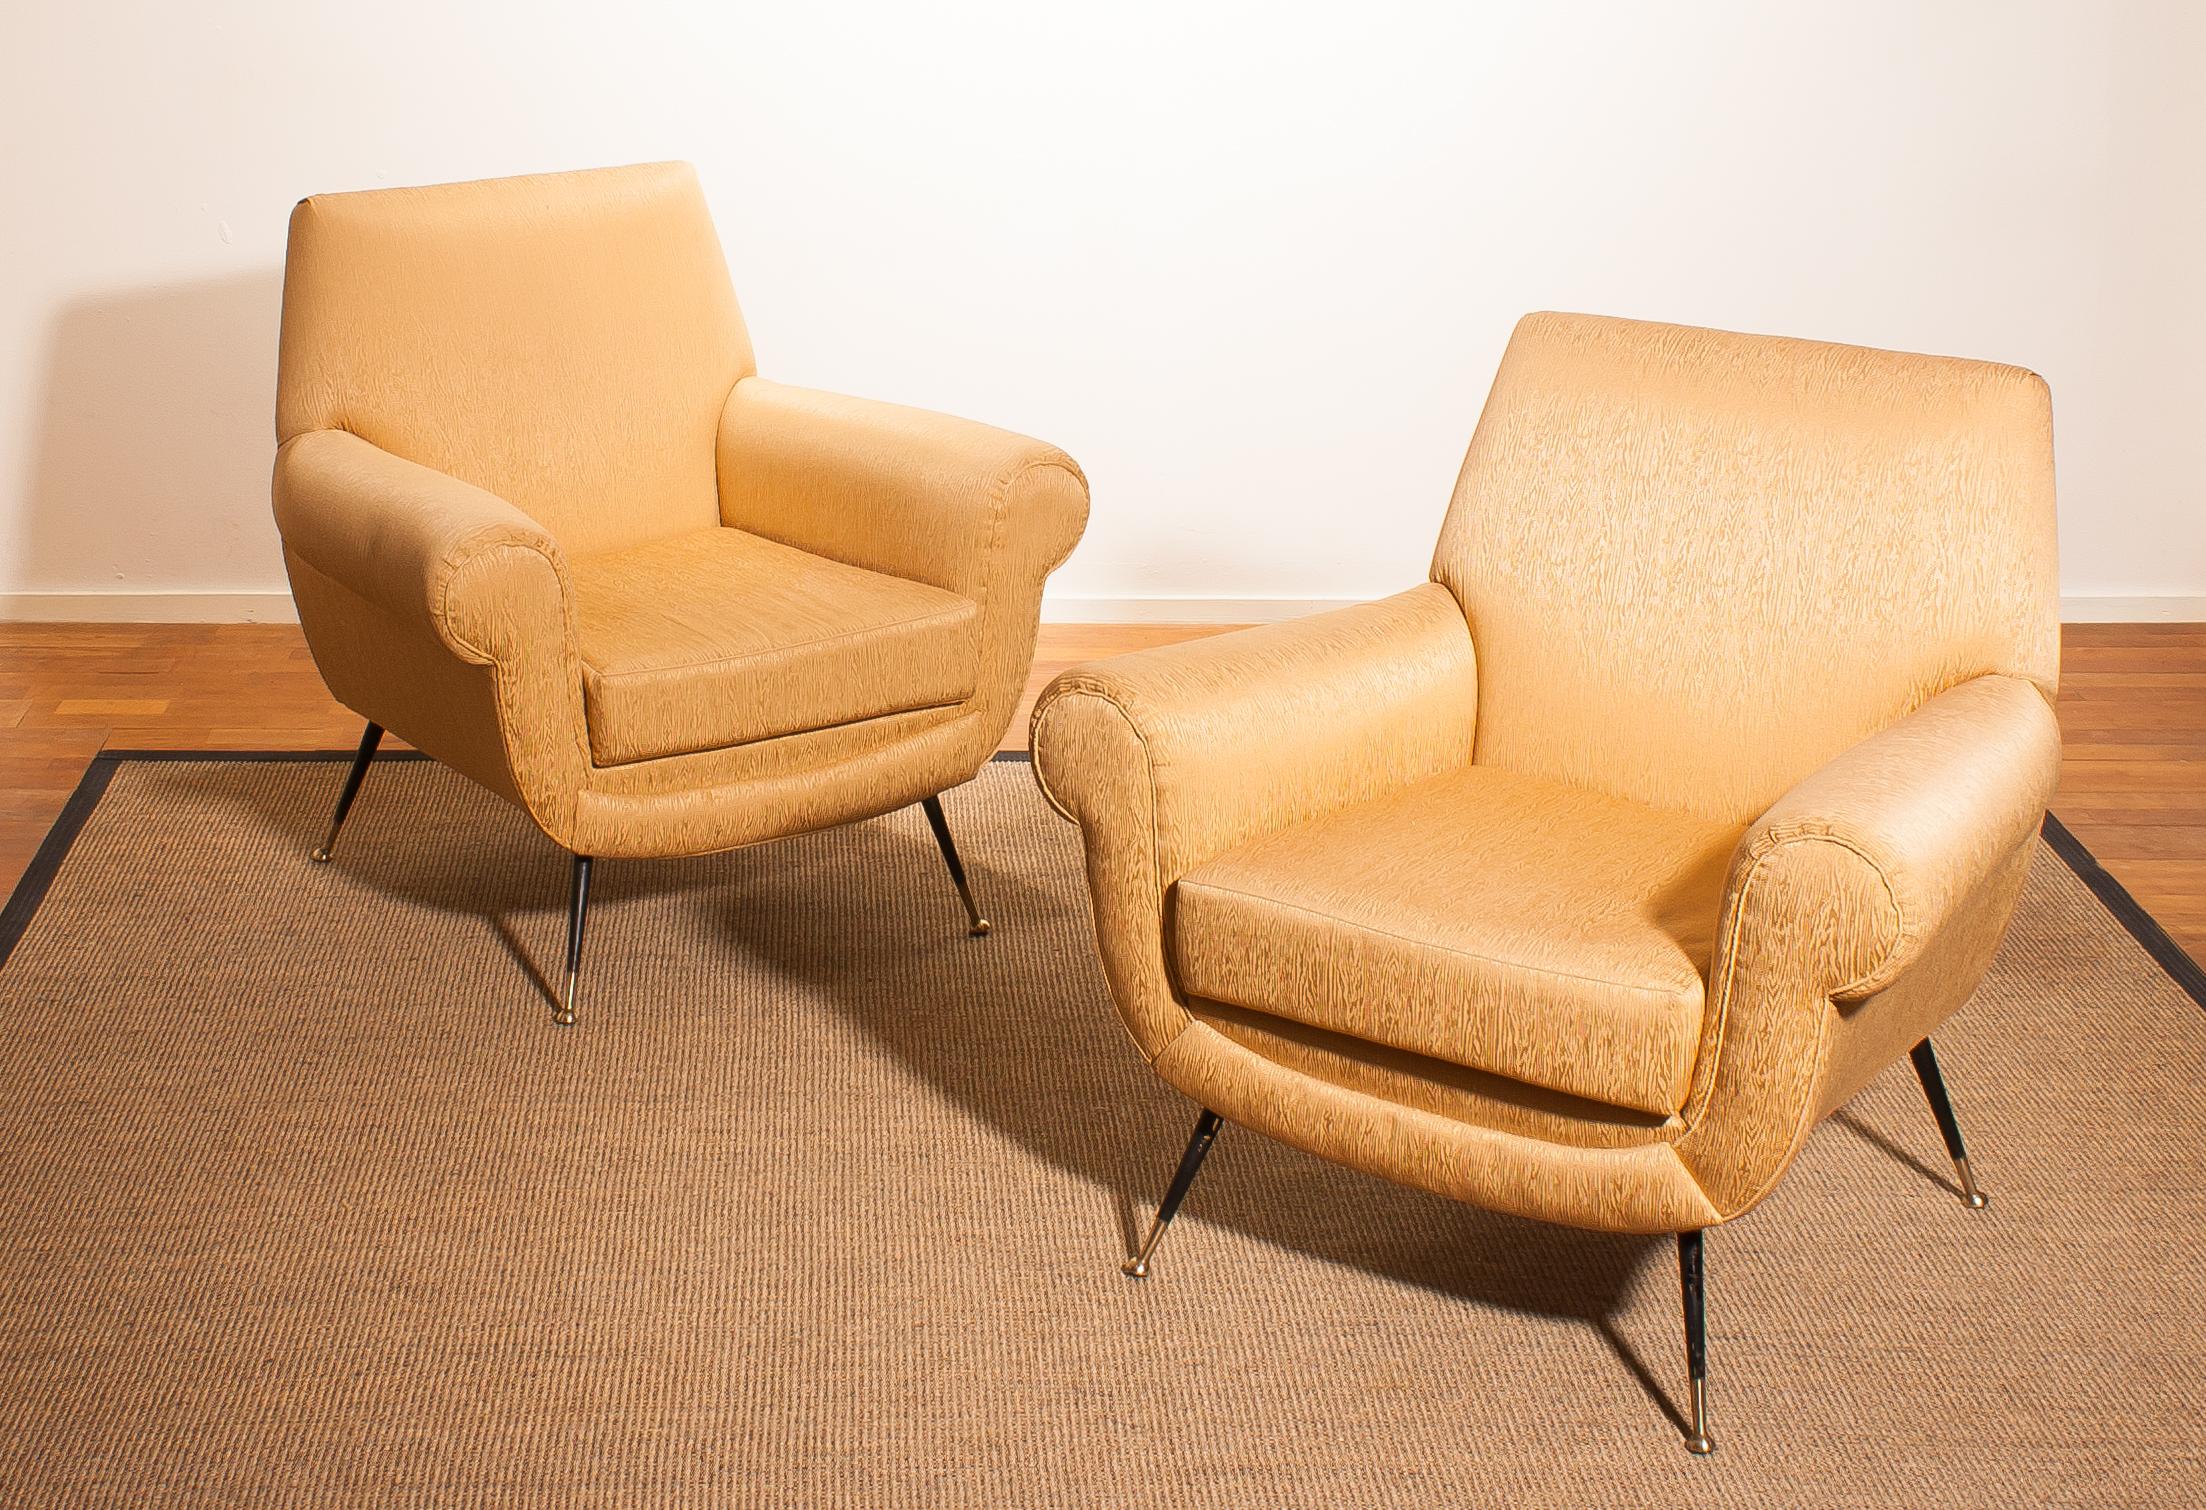 Golden Jacquard Upholstered Easy Chairs by Gigi Radice for Minotti, Brass Legs 1